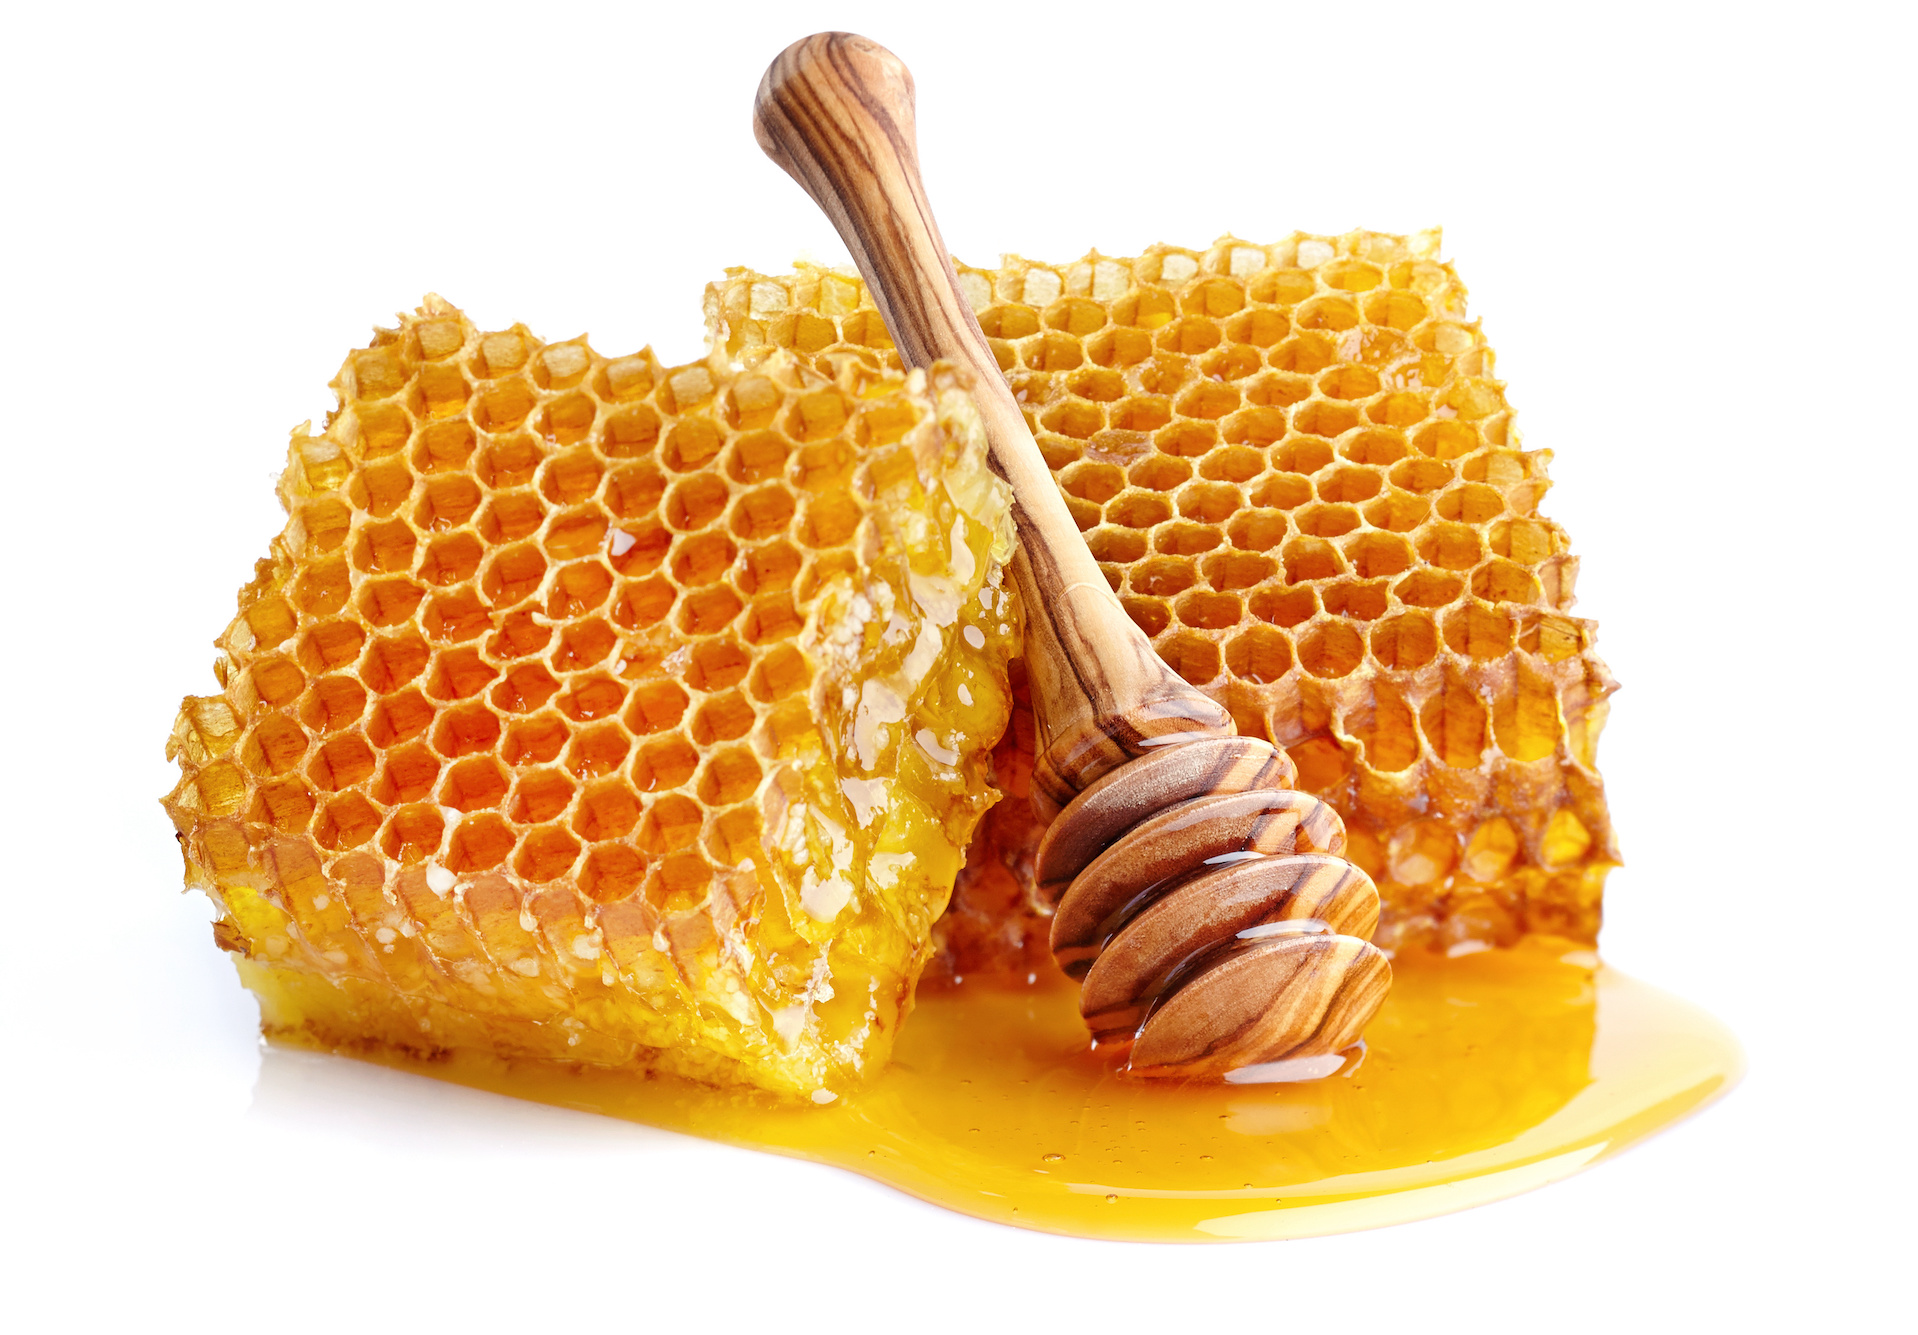 Honig: Eine goldig glänzende, süße Königin der Natur